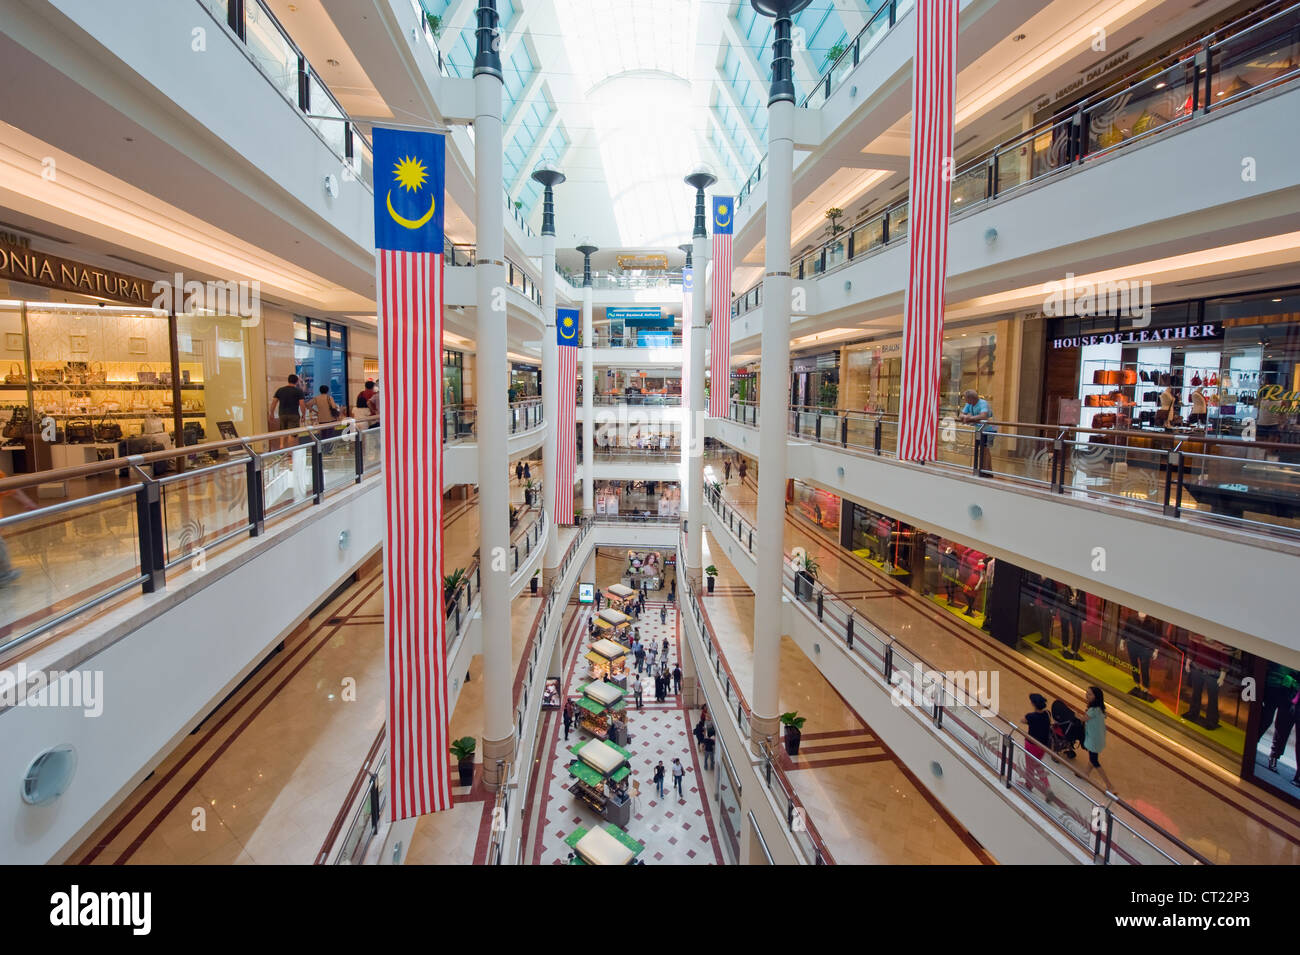 L'intérieur du centre commercial Suria KLCC Petronas Towers, Kuala Lumpur, Malaisie, Asie du Sud Est Banque D'Images